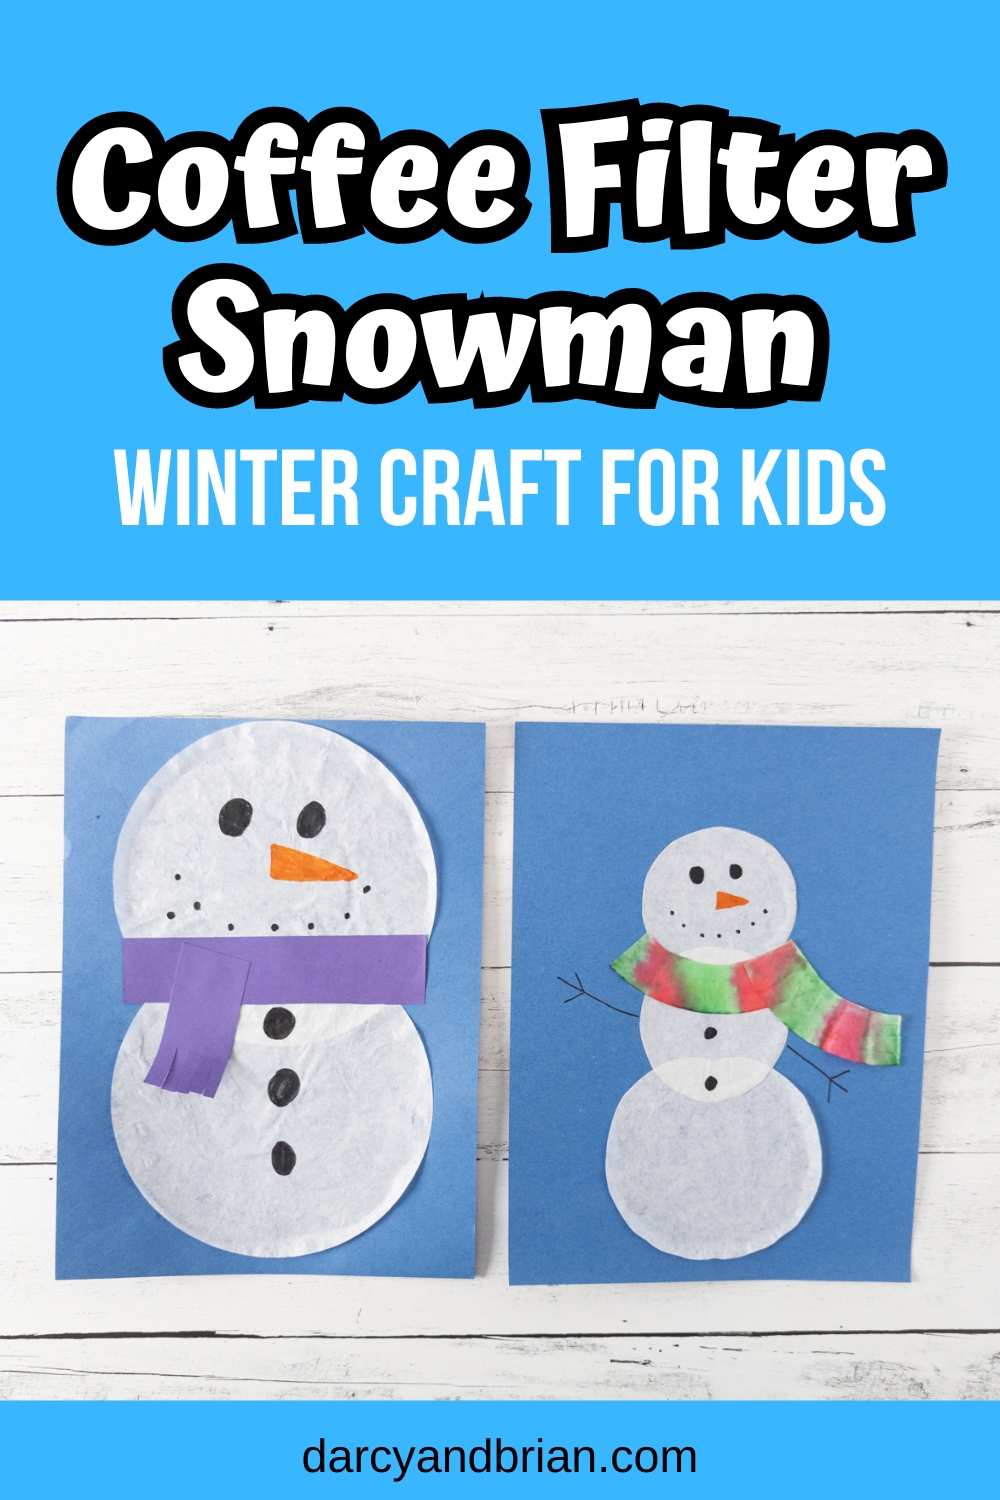 Preschool Cotton Ball Snowman Craft: A Fun Winter Craft - Teaching Littles